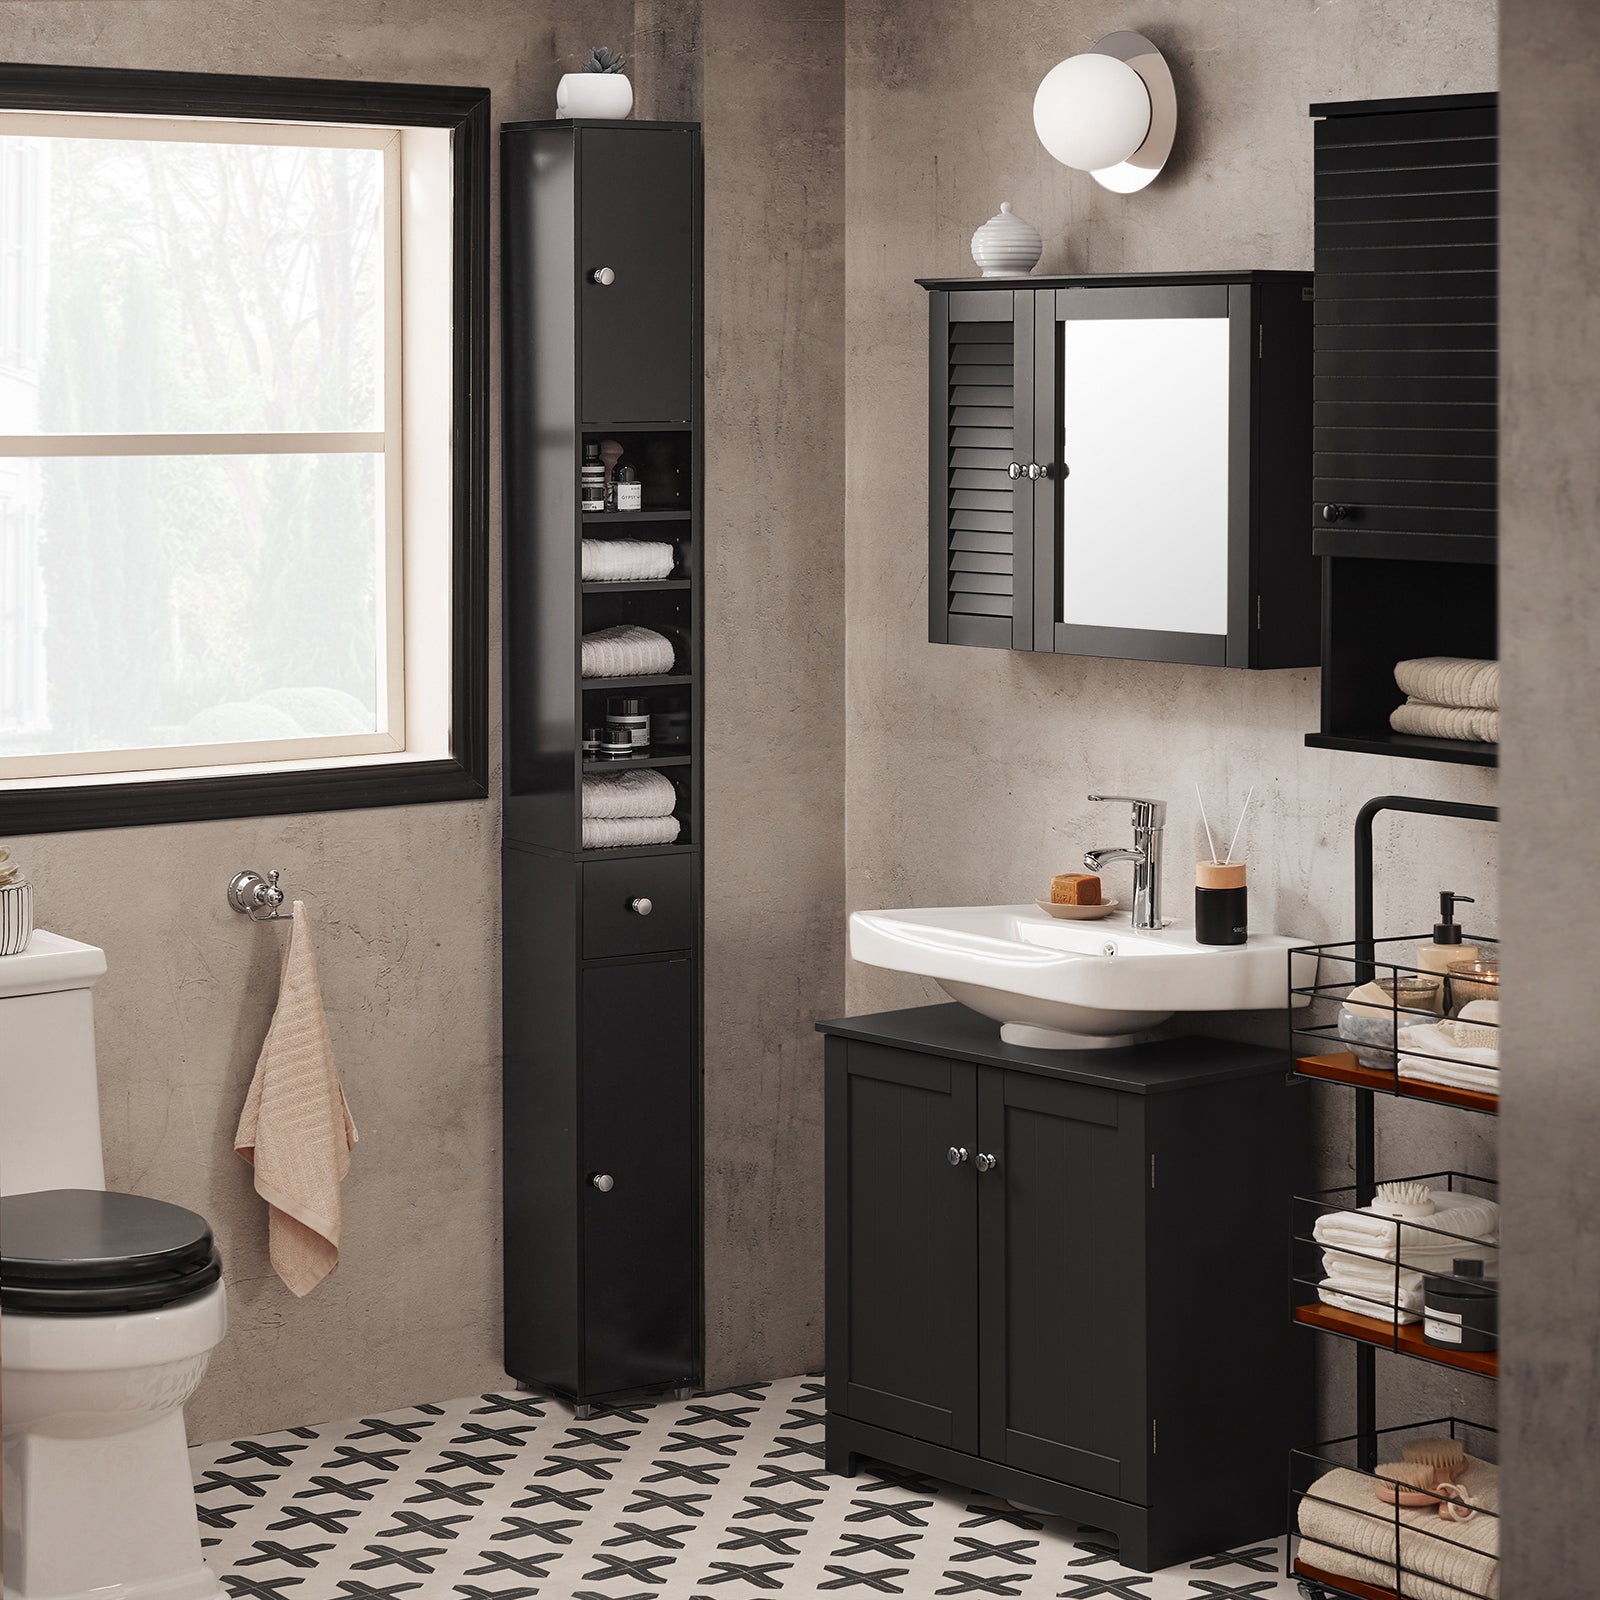 SoBuy BZR34-SCH, Bathroom Tall Cabinet Cupboard Bathroom Cabinet Storage Cabinet